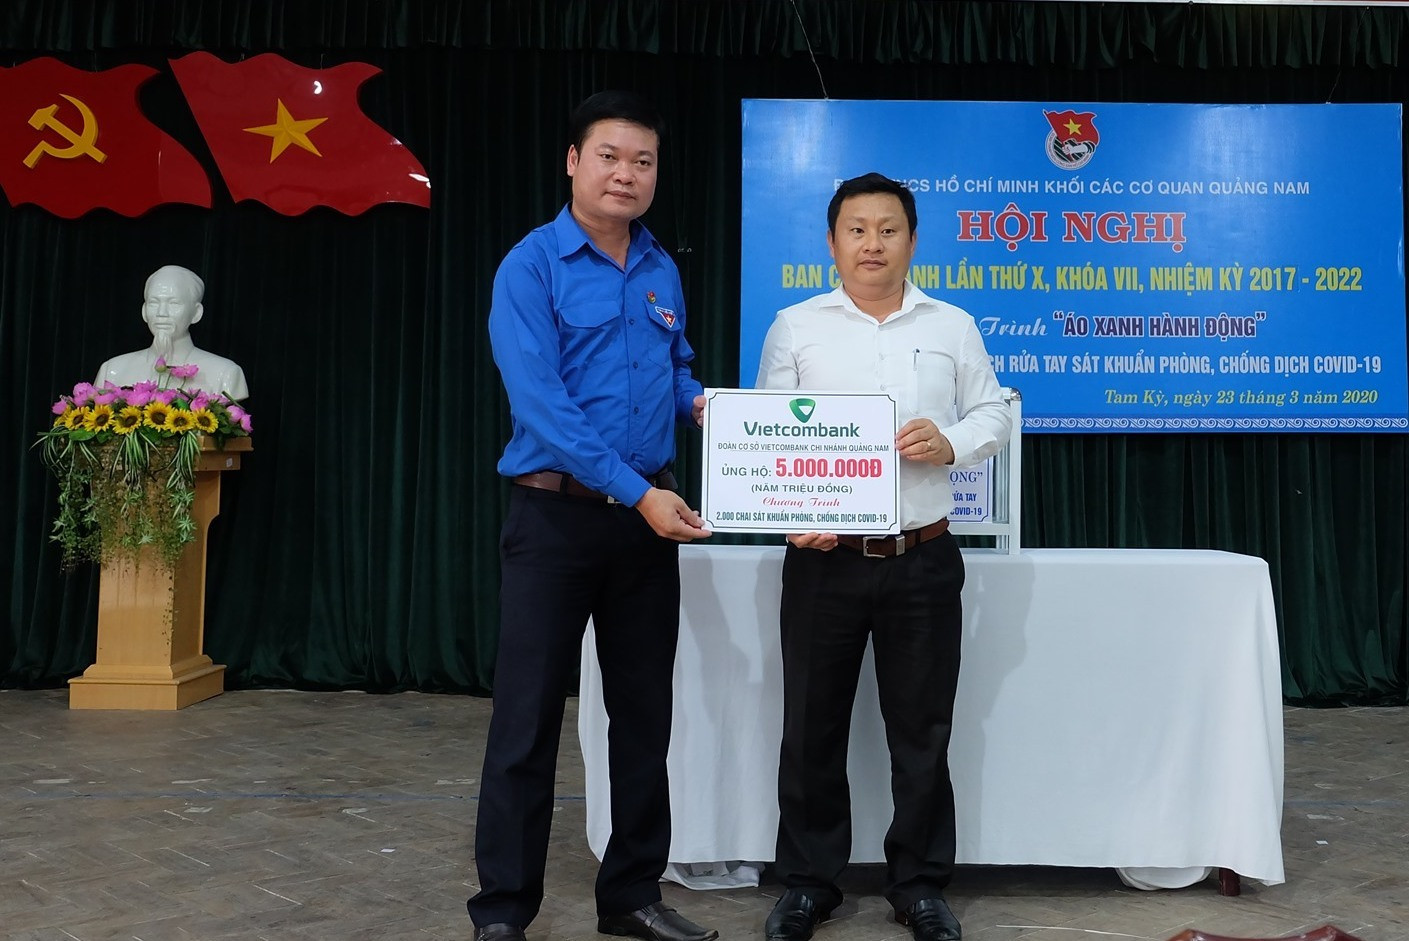 Đoàn cơ sở Ngân hàng Vietcombank Chi nhánh Quảng Nam ủng hộ 5 triệu đồng để sản xuất 2.000 chai nước sát khuẩn tặng cho người dân. Ảnh: M.L